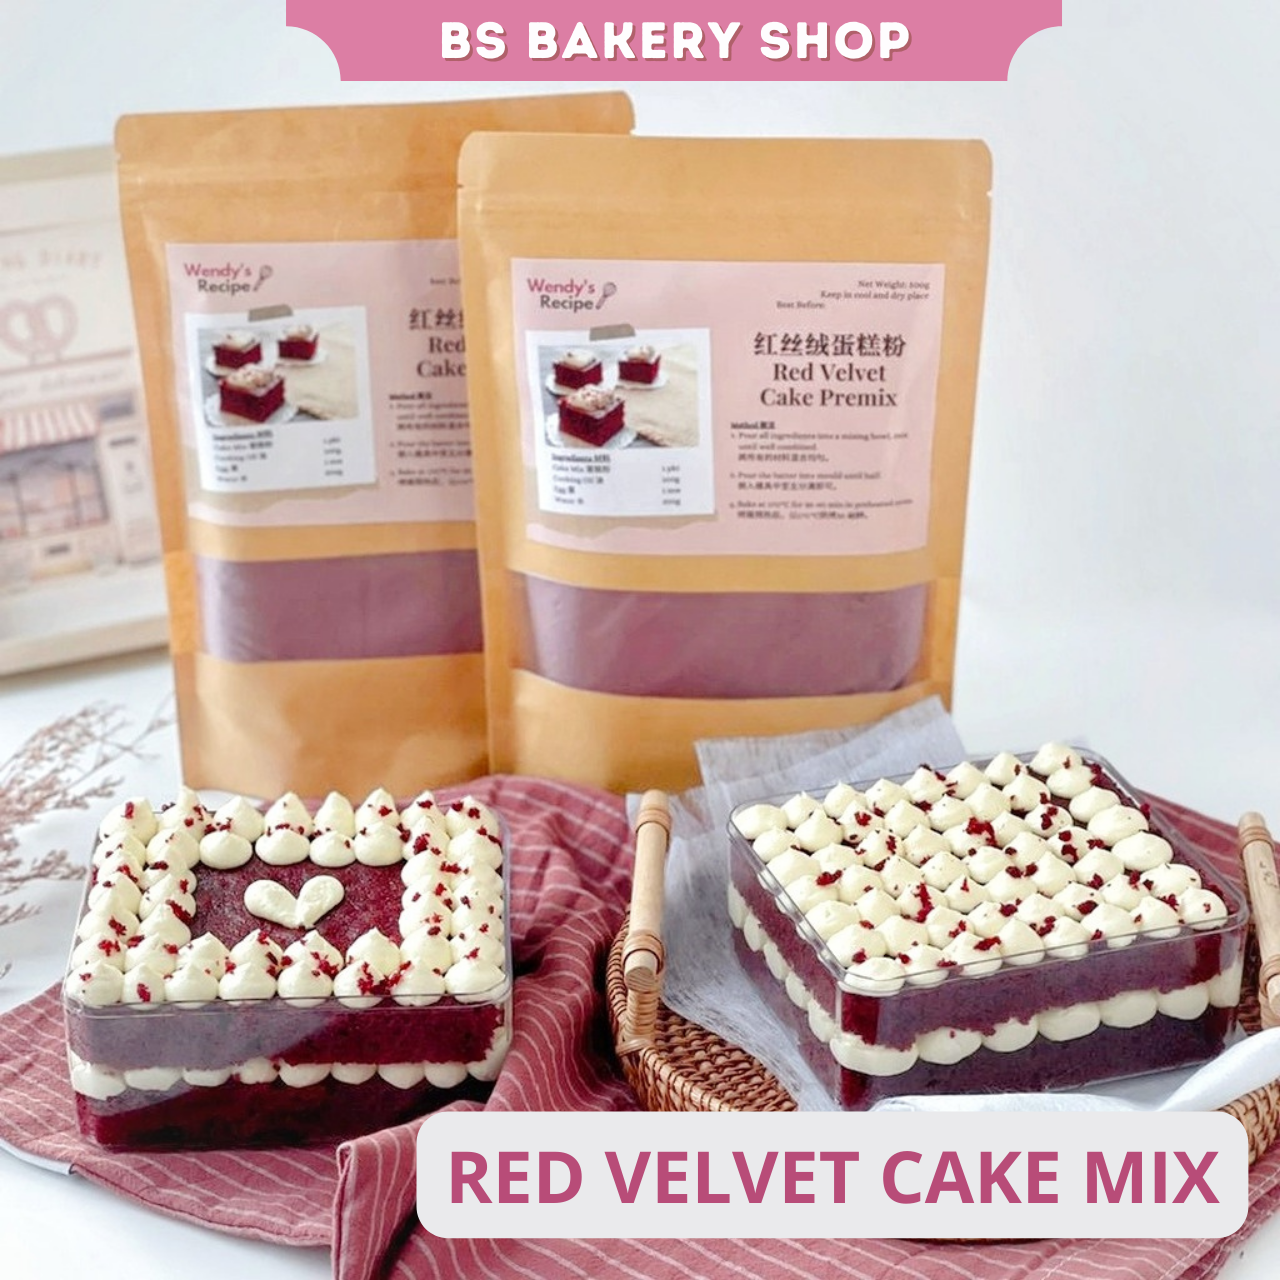 Red Velvet Cake Mix - Manufacturer & Exporter of Red Velvet Cake Premix